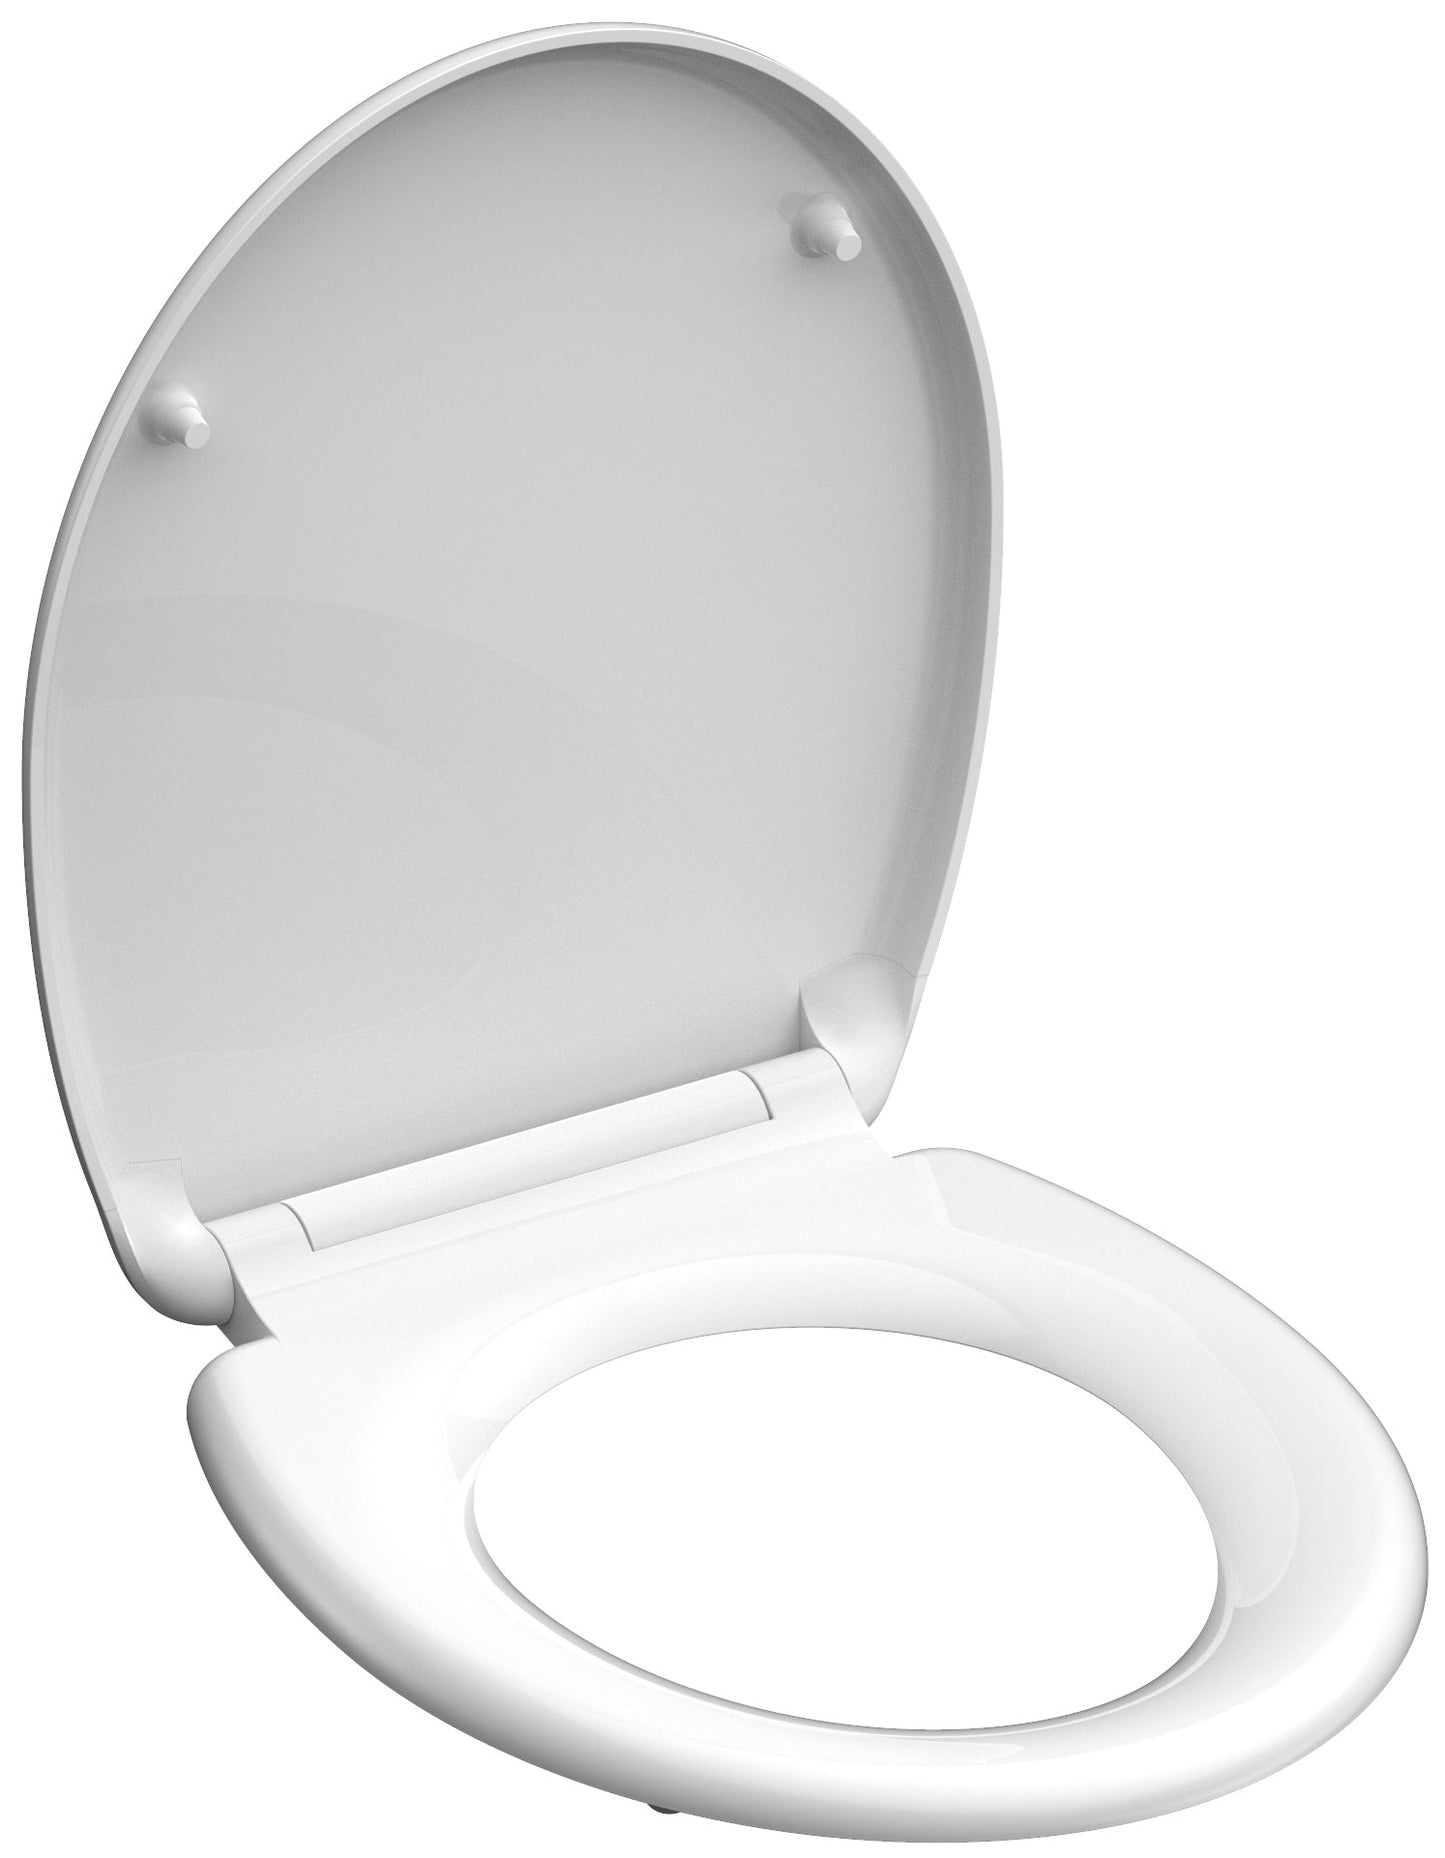 Vit toalettsits för vägghängd toalett - BÄST. CC-mått: 90-190mm Längd: 450mm Bredd: 375mm.